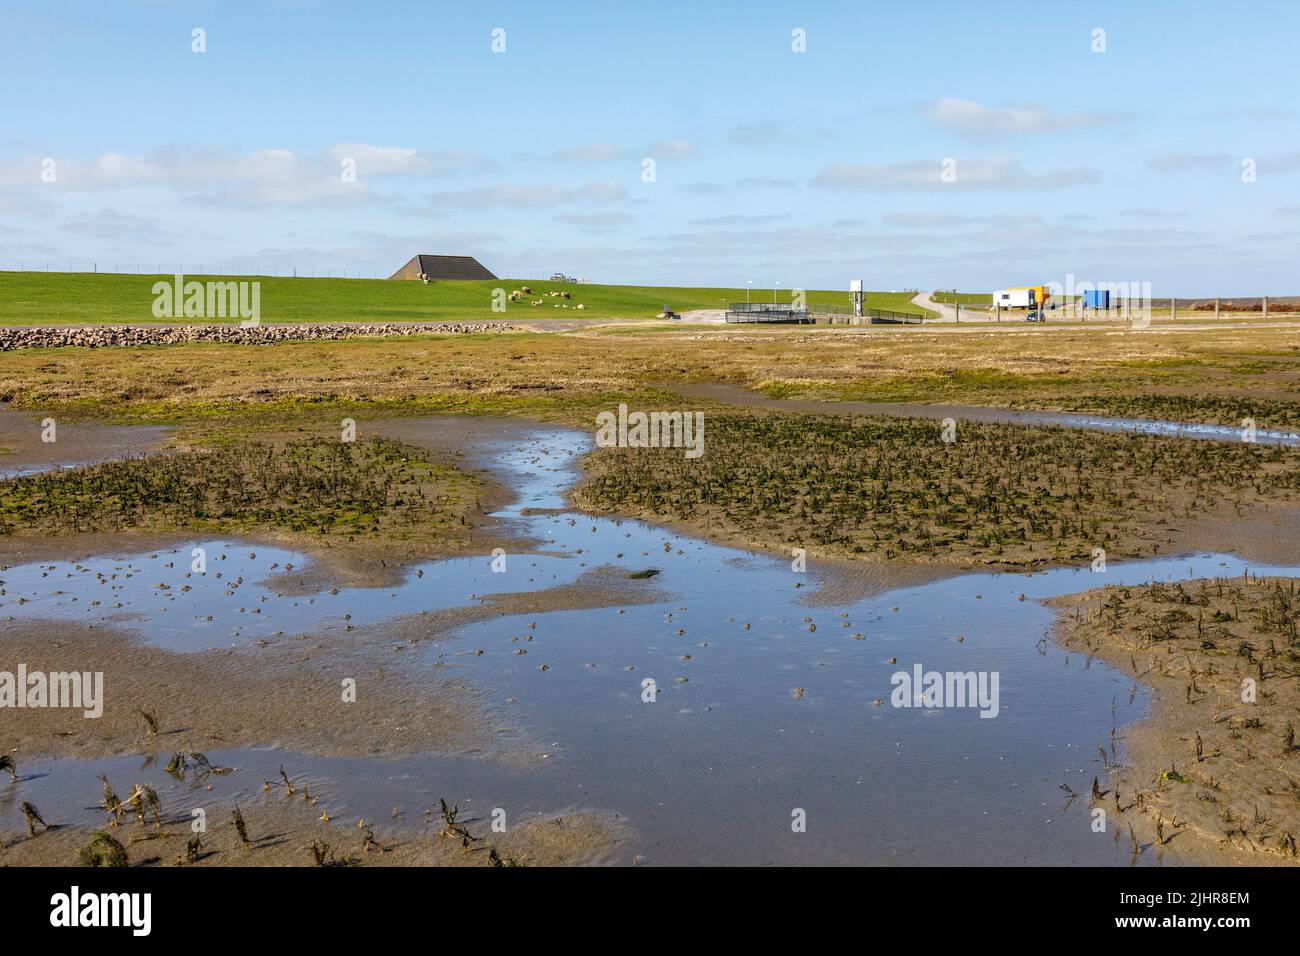 Wattlandschaft bei Tetenbüll in Nordfriesland, Blick auf den Deich am Everschopsiel Hafen Stock Photo